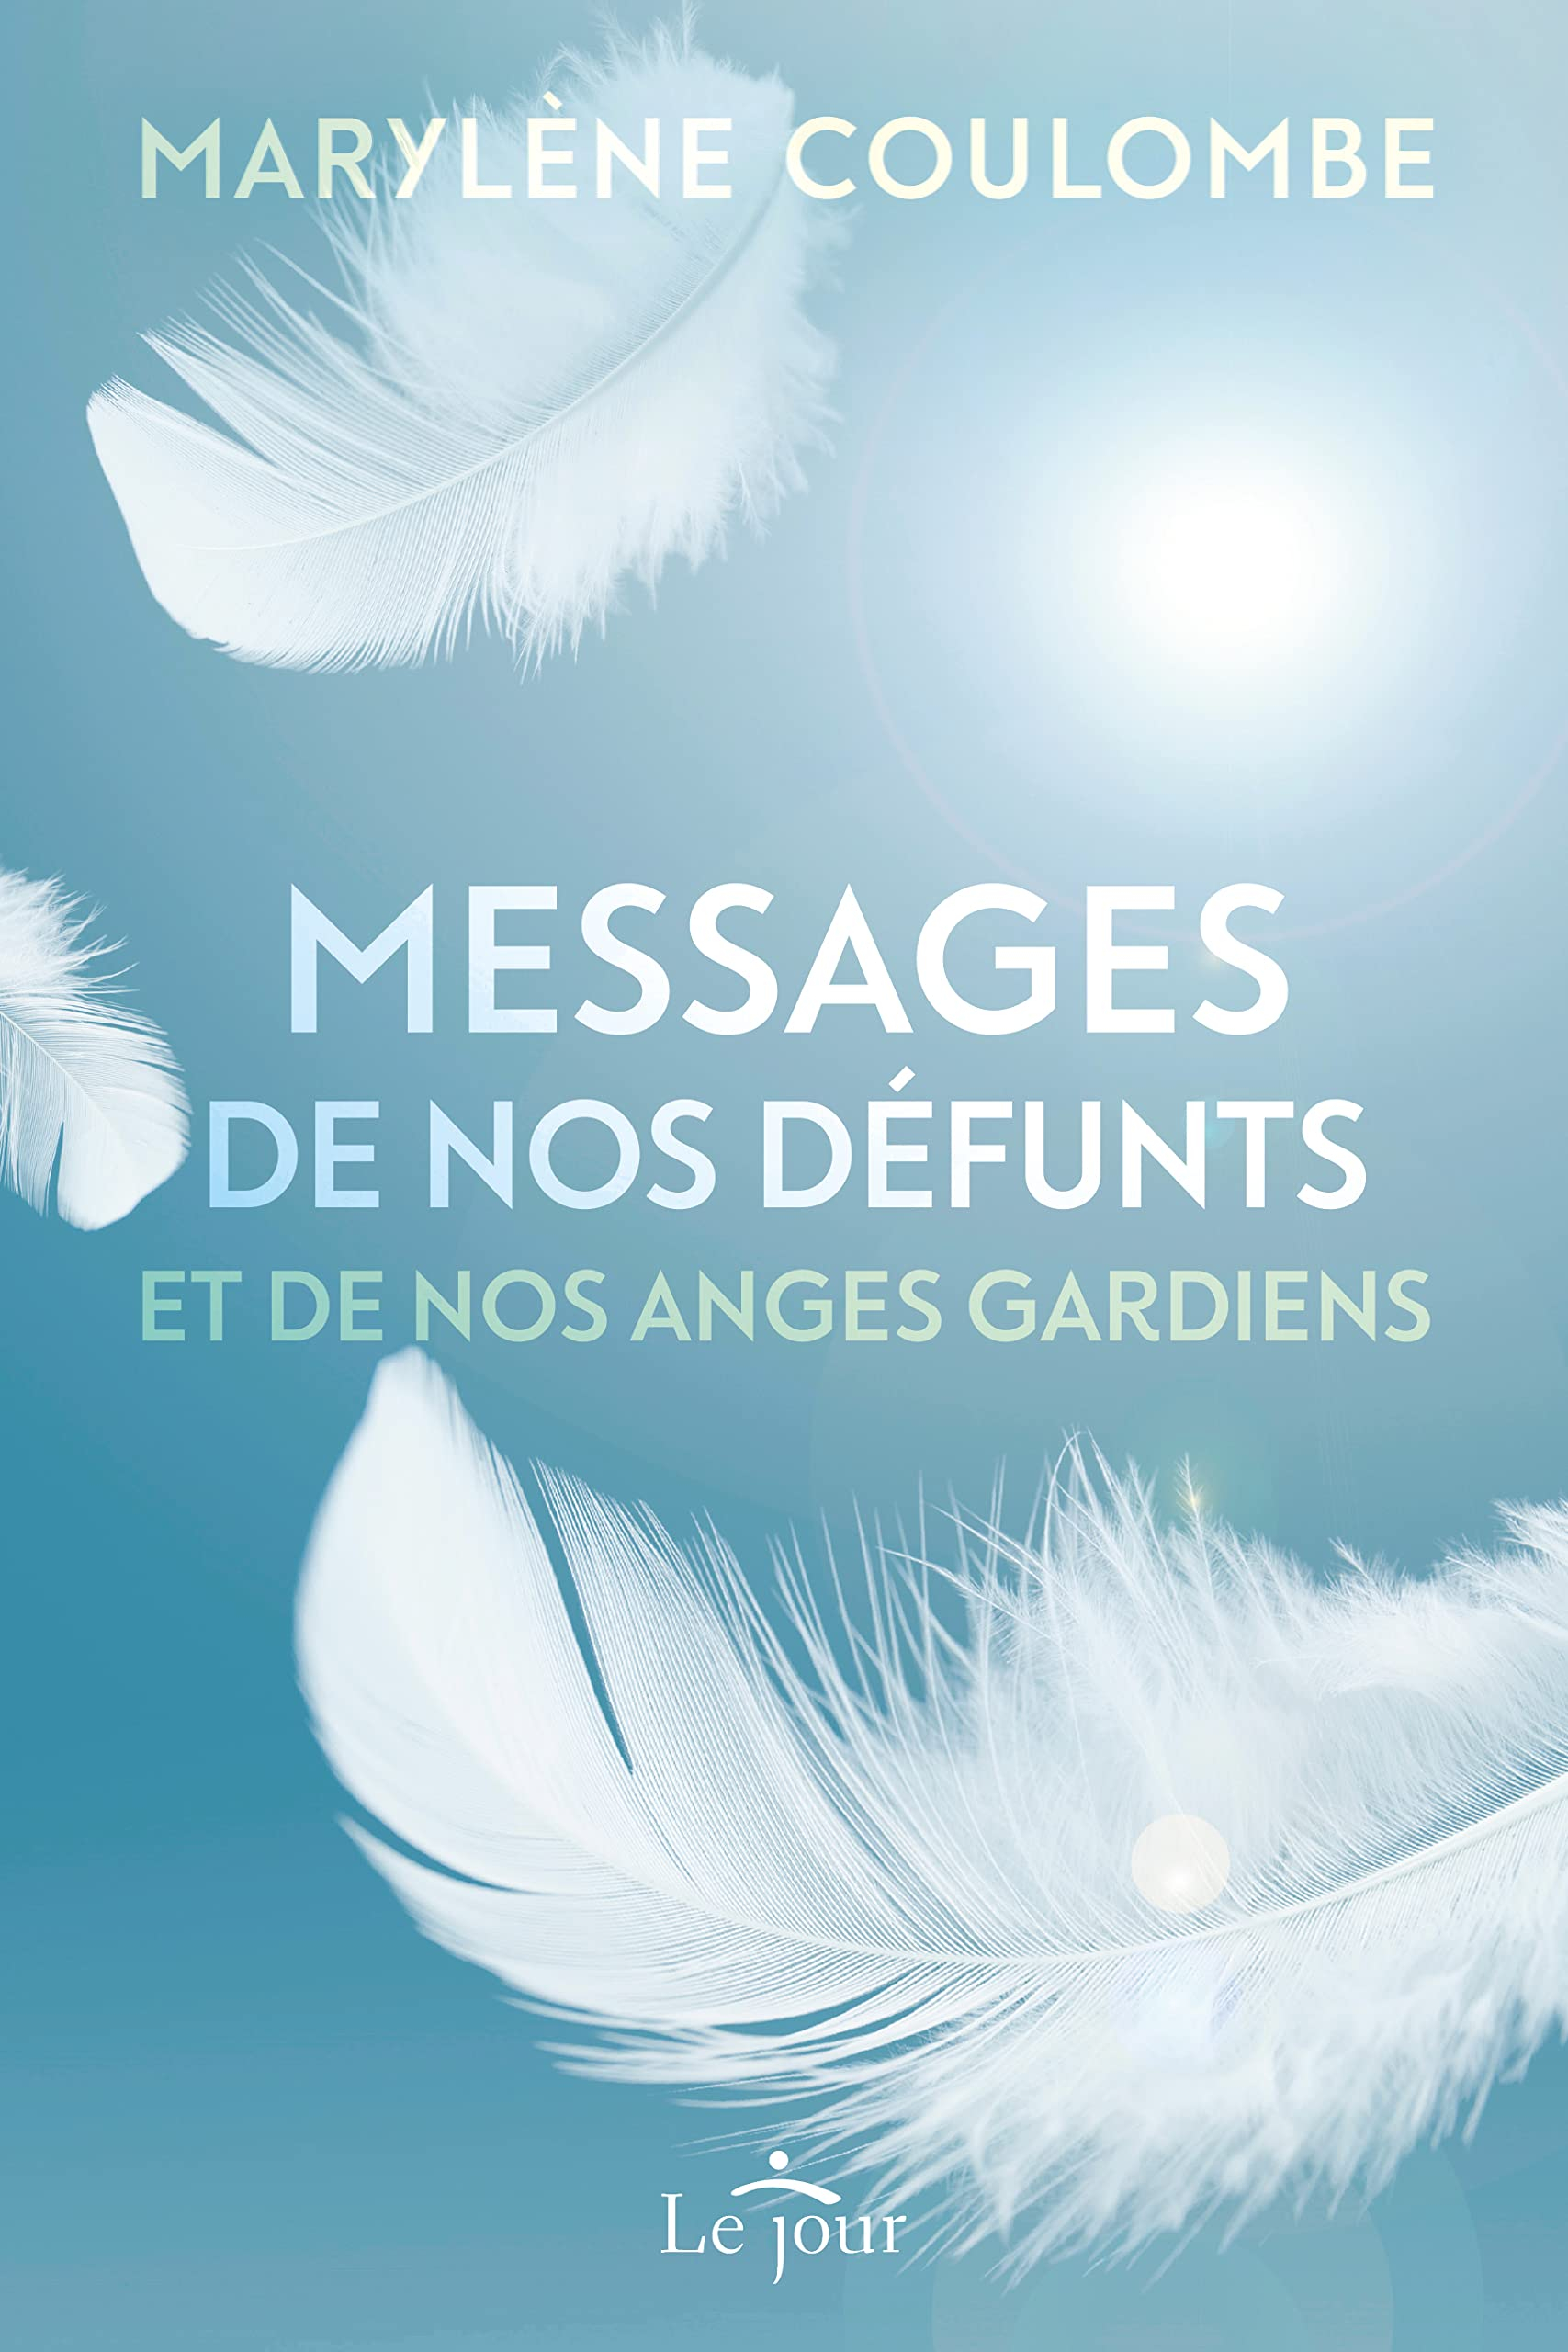 Messages de nos défunts et de nos anges gardiens : et si un être cher décédé tentait de vous parler.